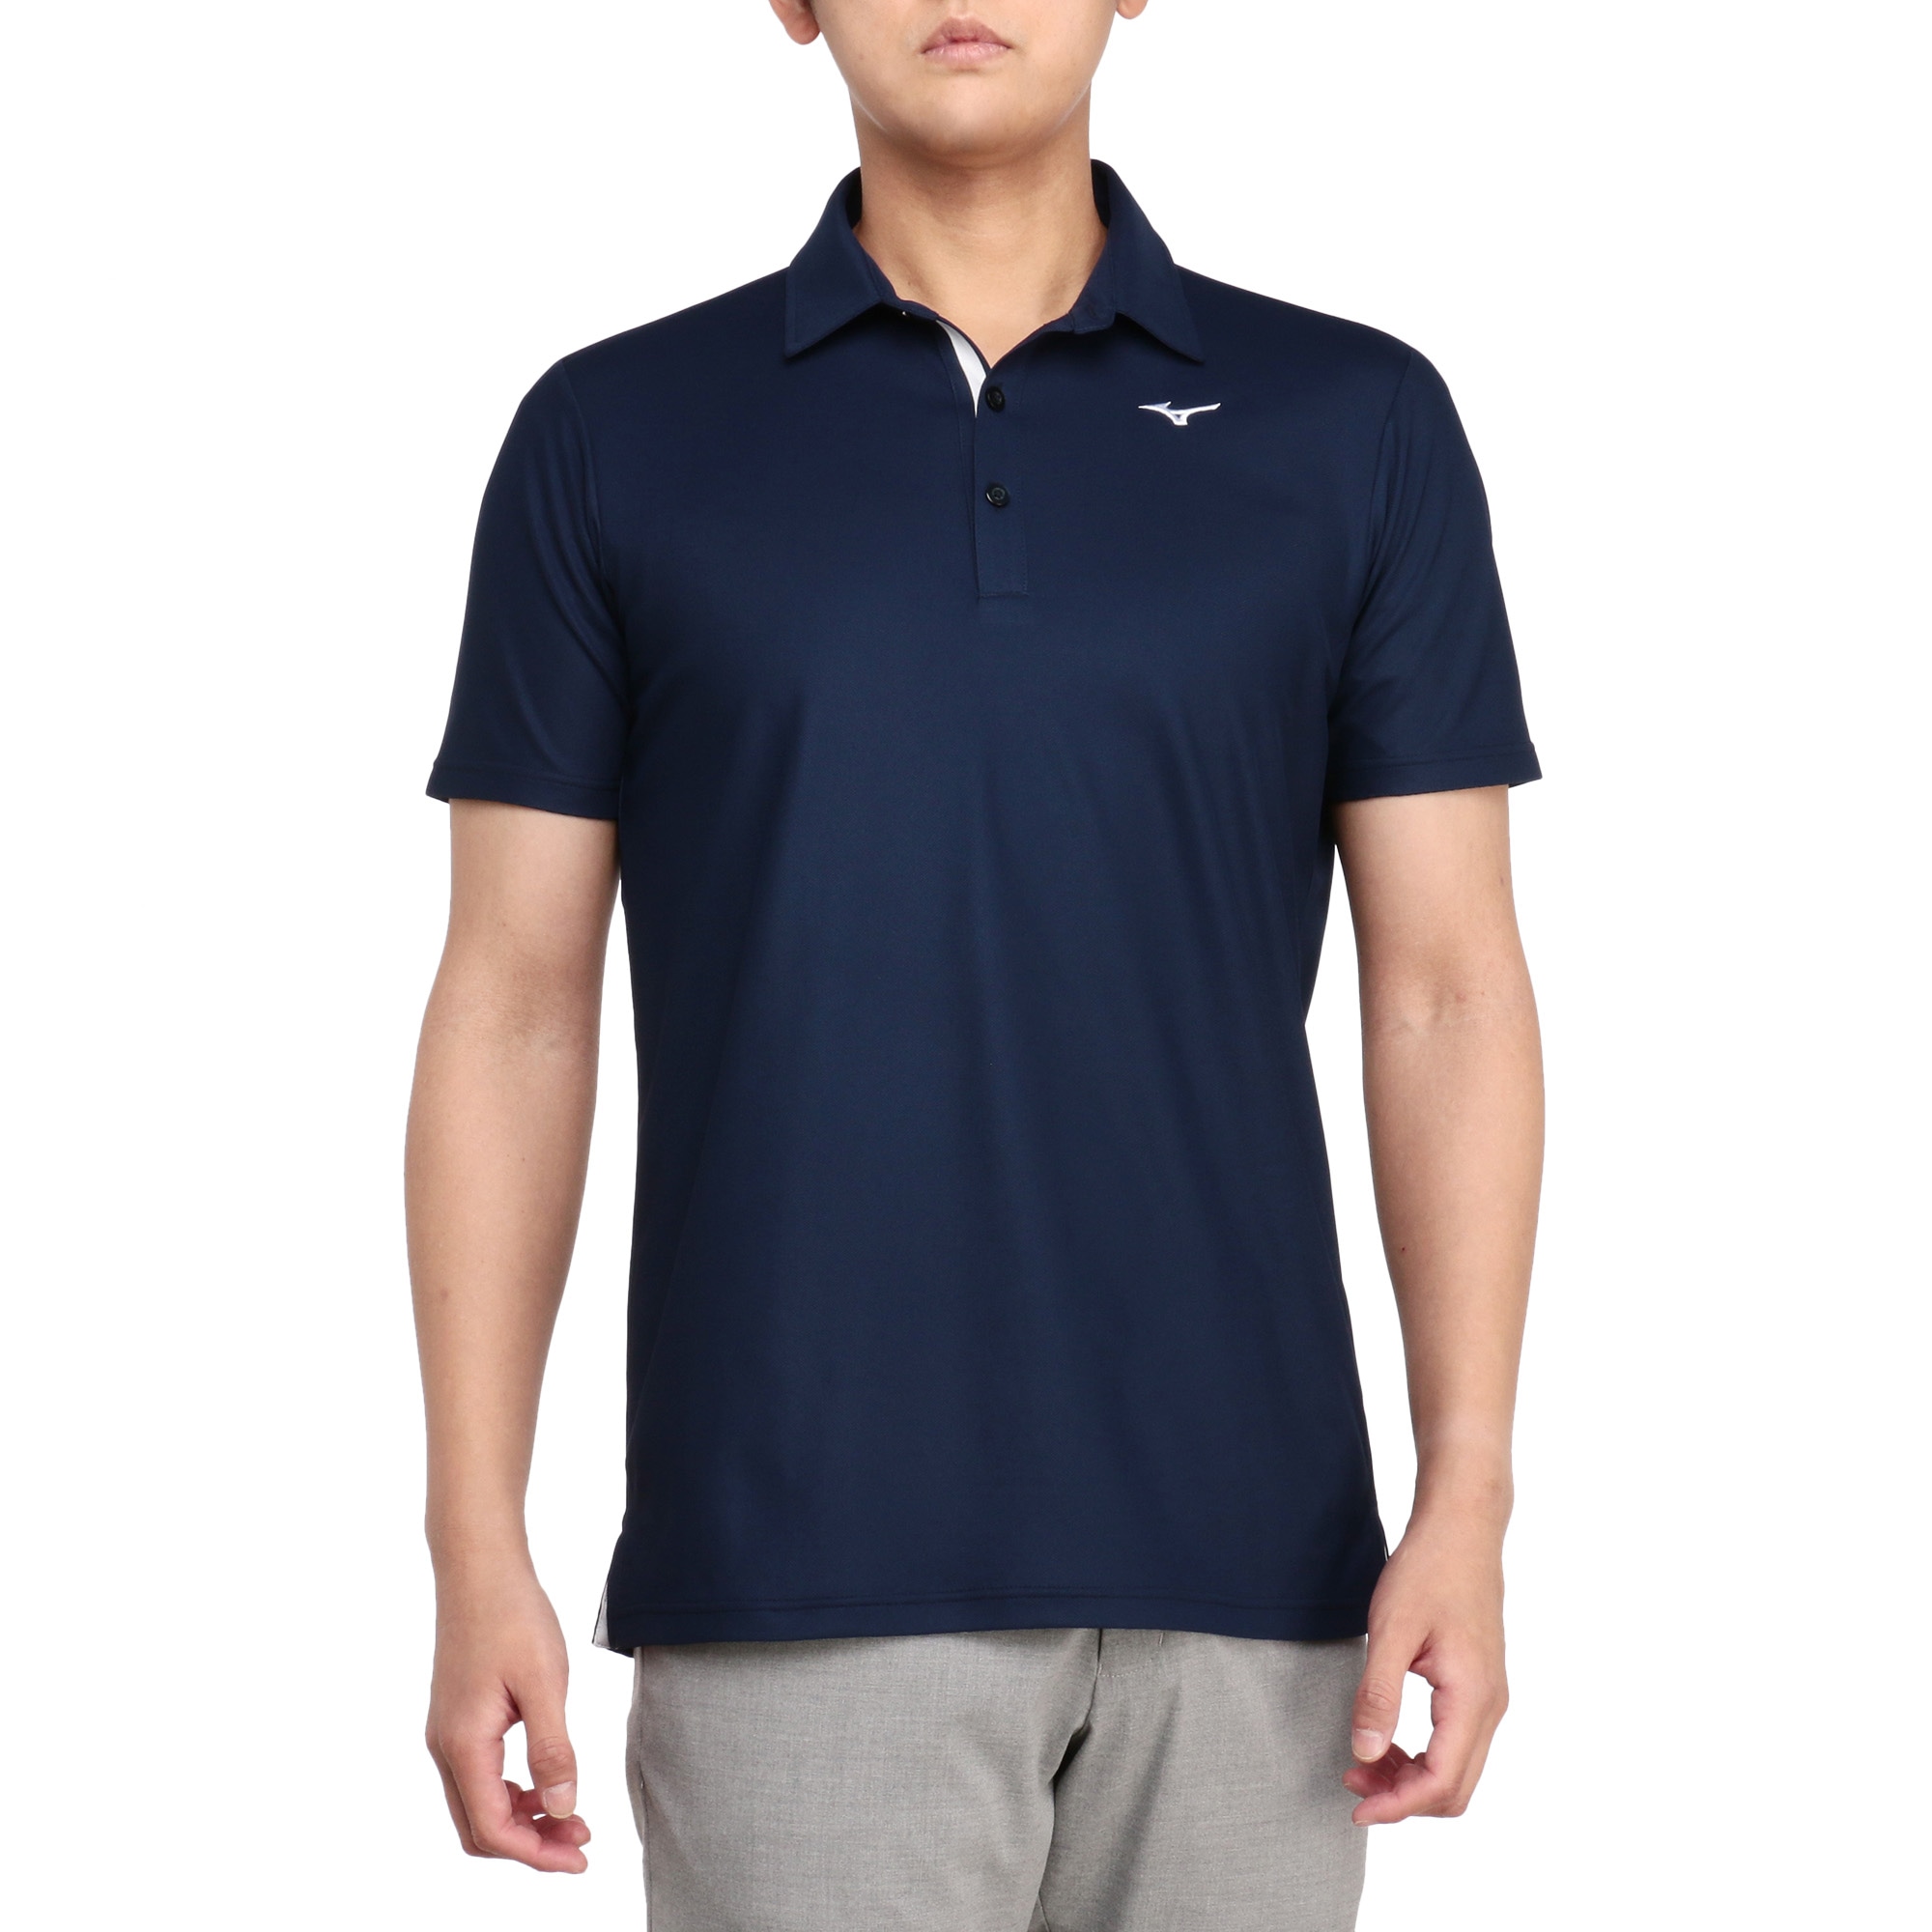 ベーシック半袖共衿シャツ[メンズ]|E2MAAA01|半袖シャツ|ゴルフウエア